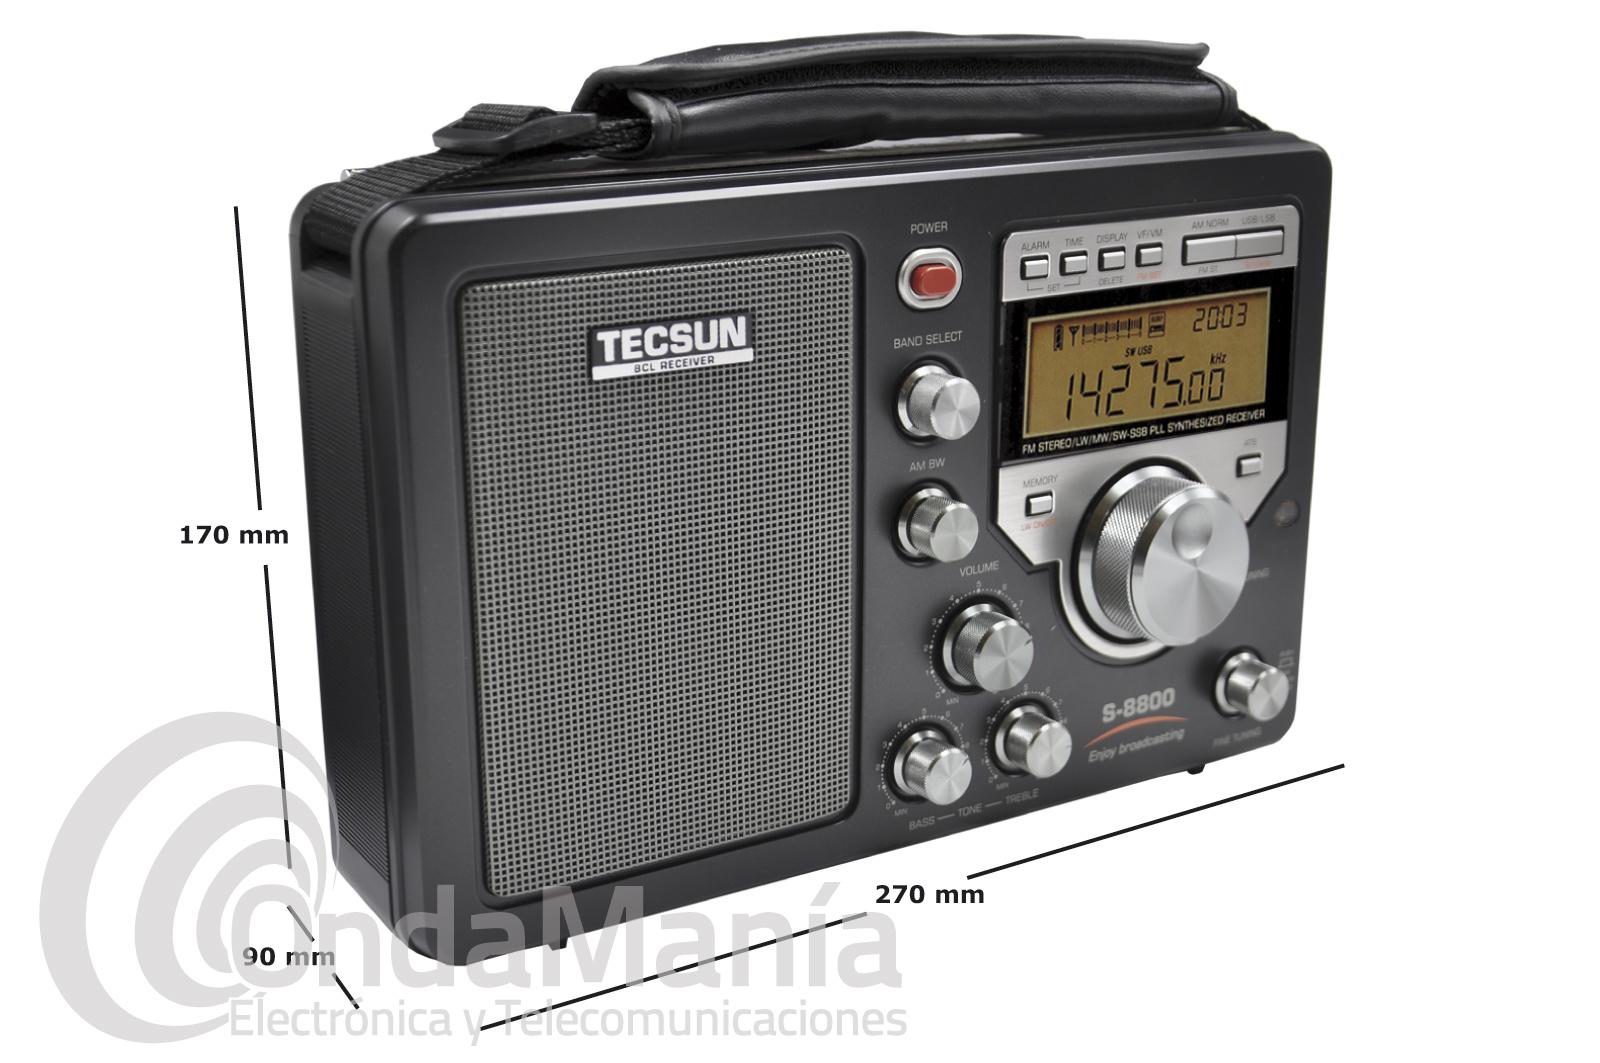 Radio multibanda TECSUN S-8800 con AM, FM, LW, SW y SSB banda LATERAL